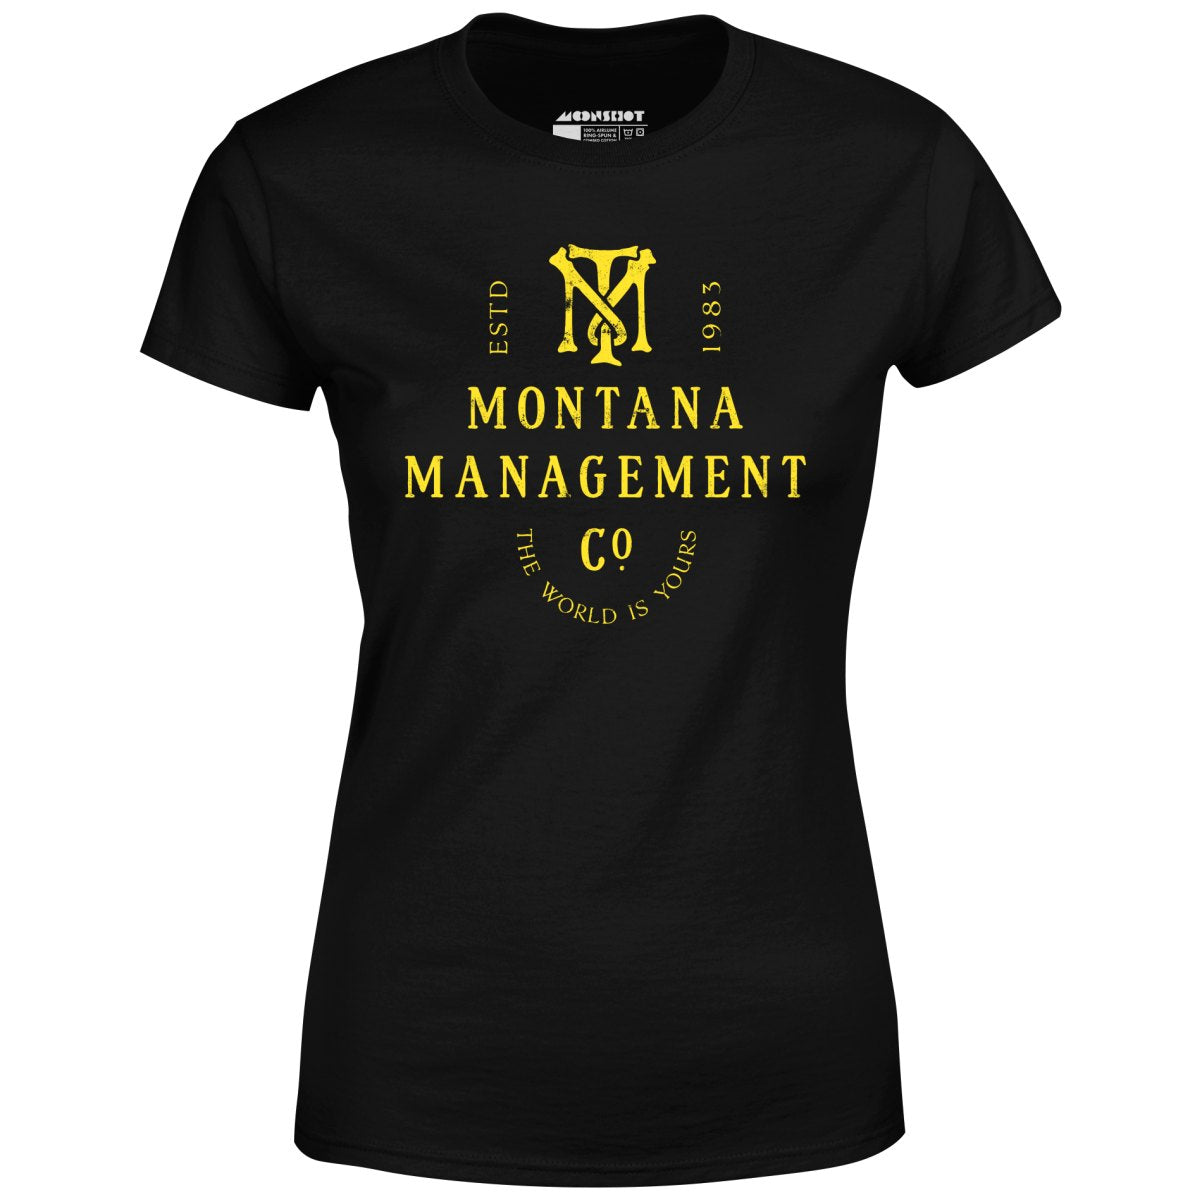 Montana Management Co. - Women's T-Shirt